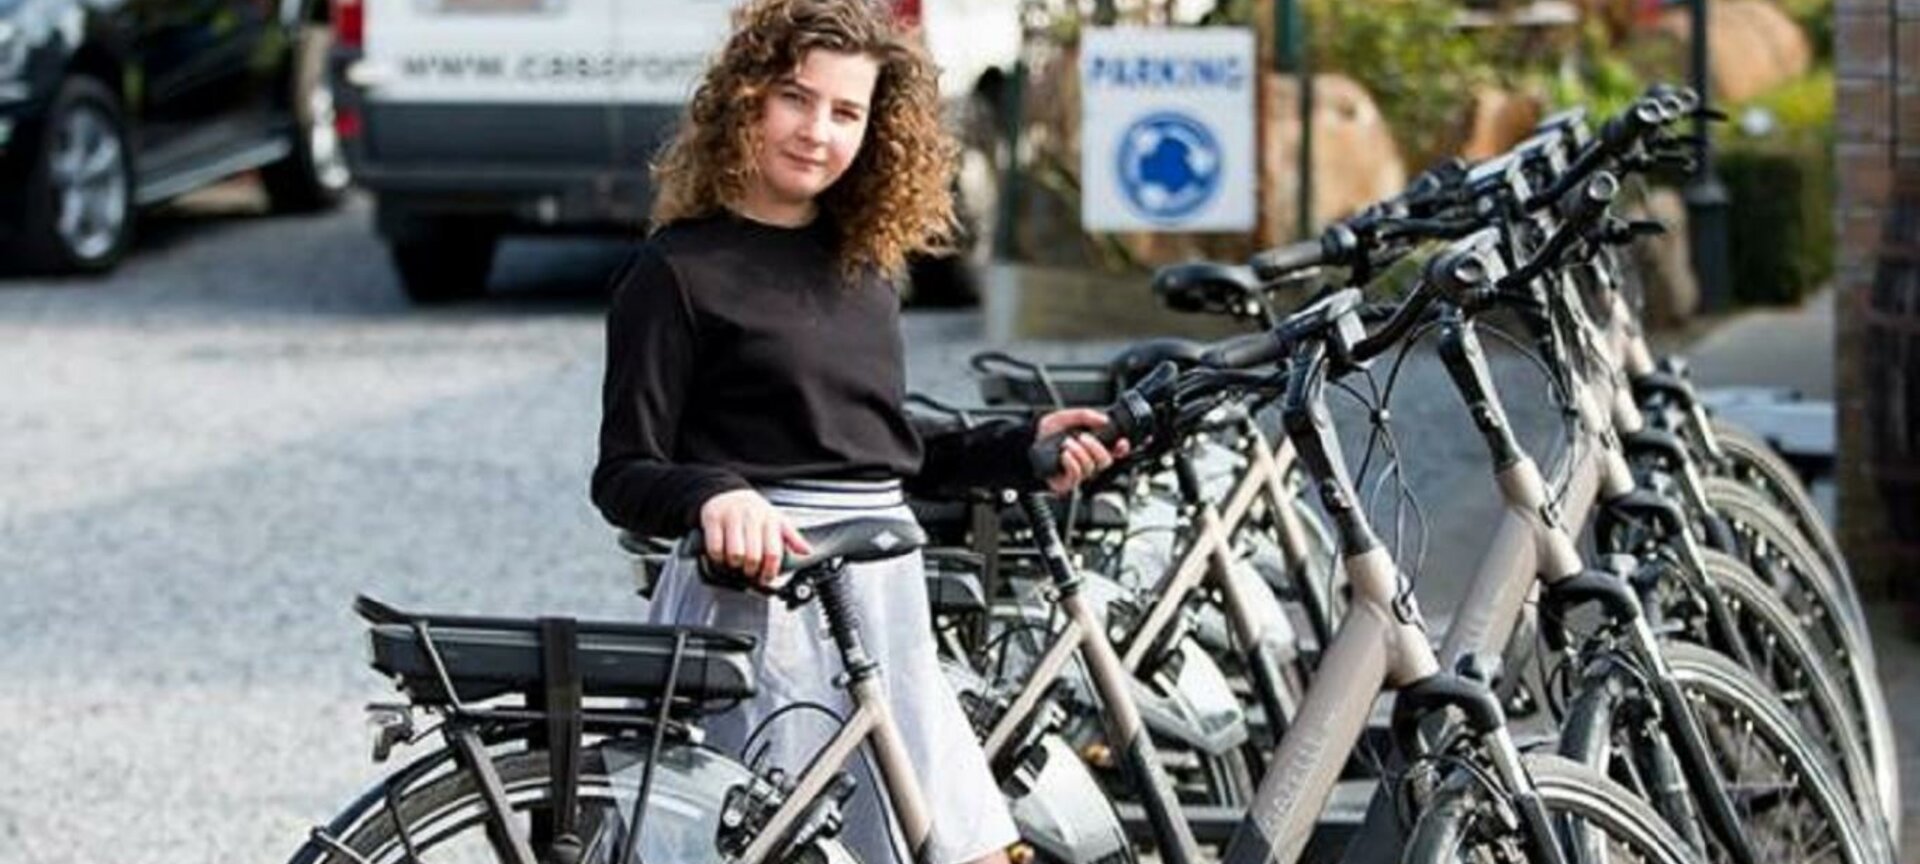 Fietsverhuur: elektrische en gewone fietsen bij B&B Casa Roman - elektrische fietsen